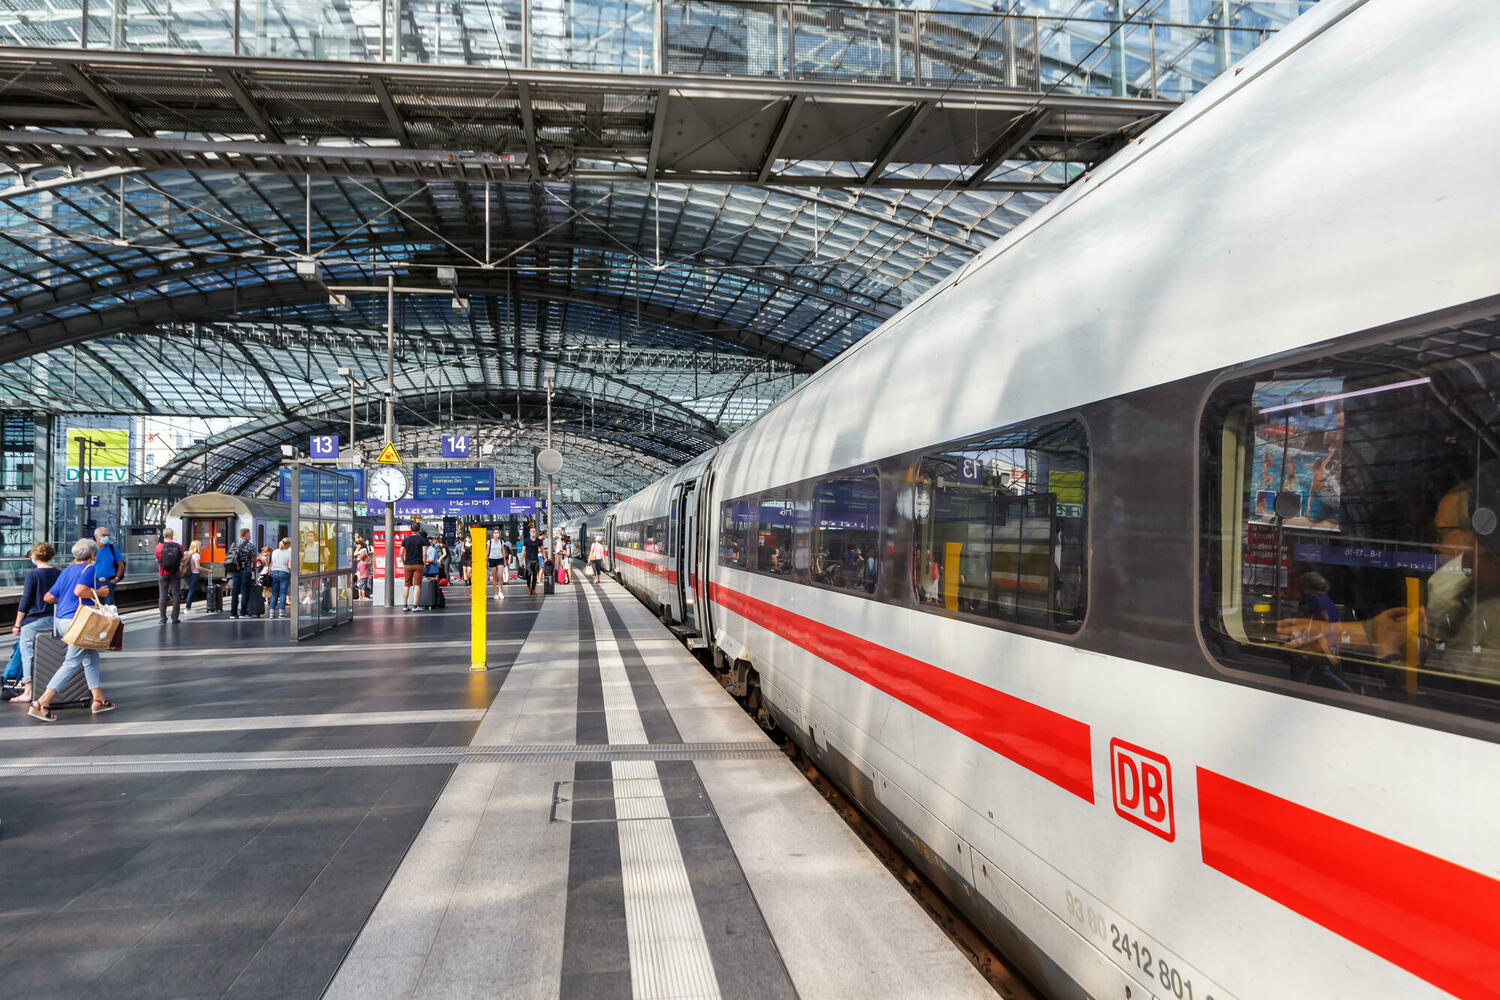  Германия опробует дешевый общественный транспорт: месячный проездной всего за 9 евро 